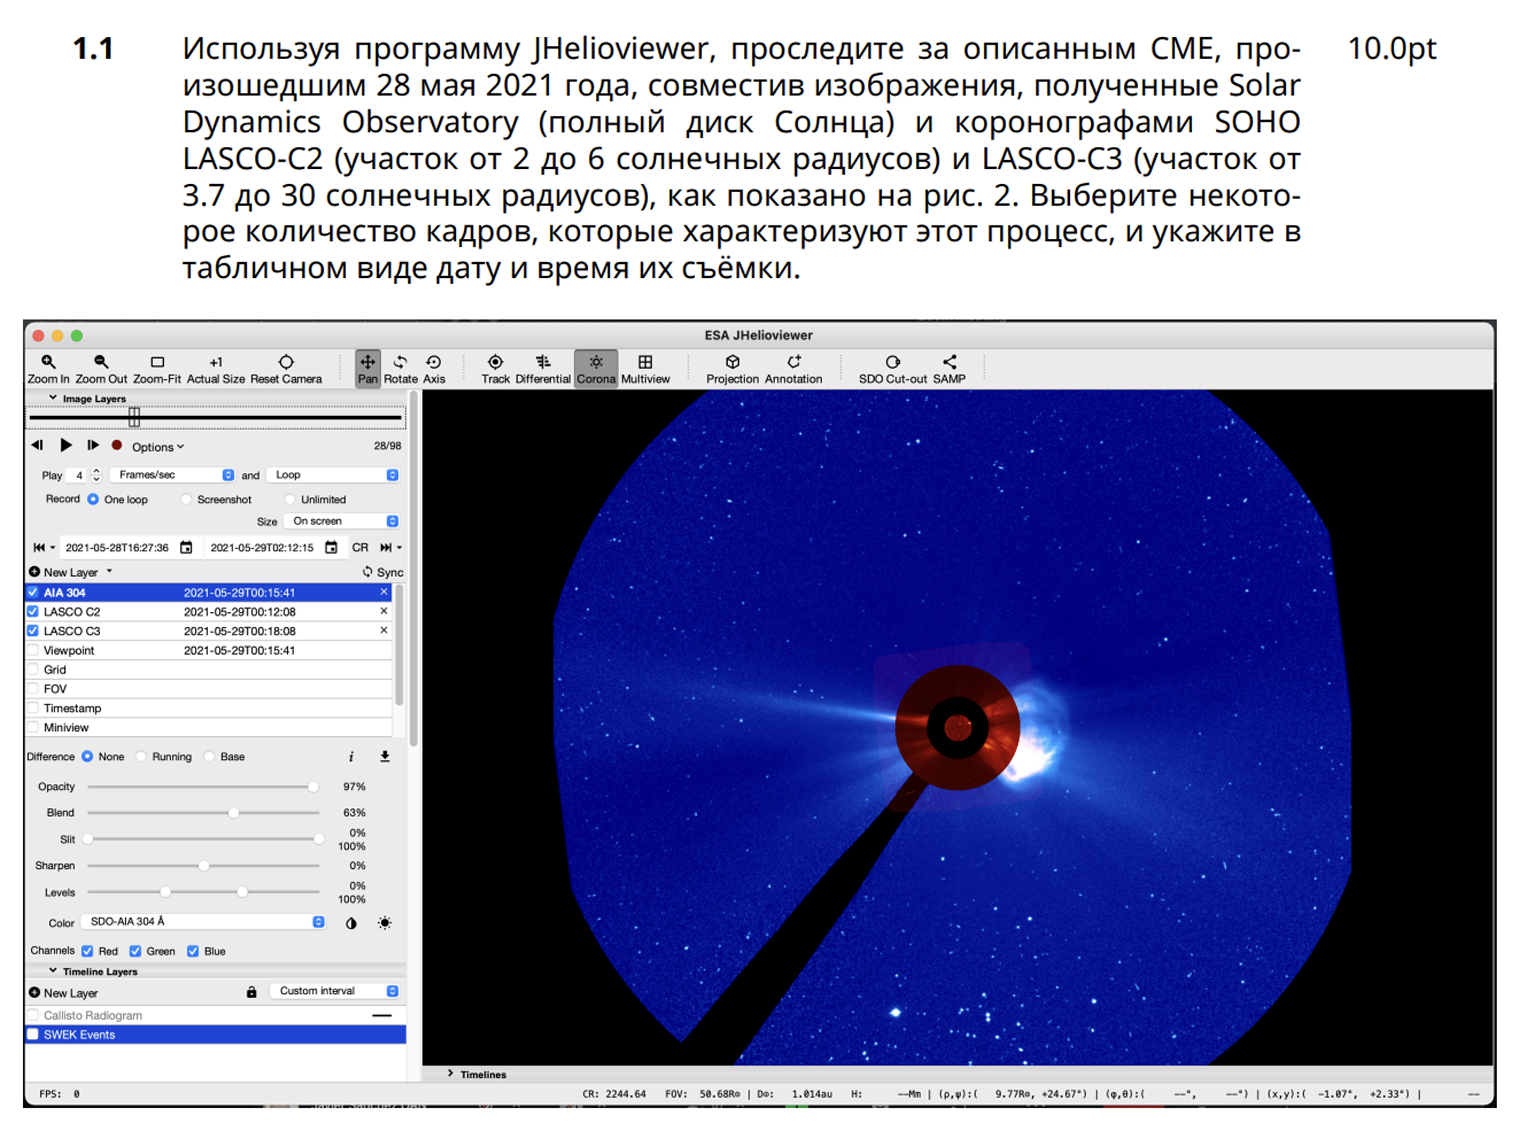 Задание олимпиады по астрономии 2021 года. Источник: сообщество «AstroEdu — Астрономическое образование» во «Вконтакте»